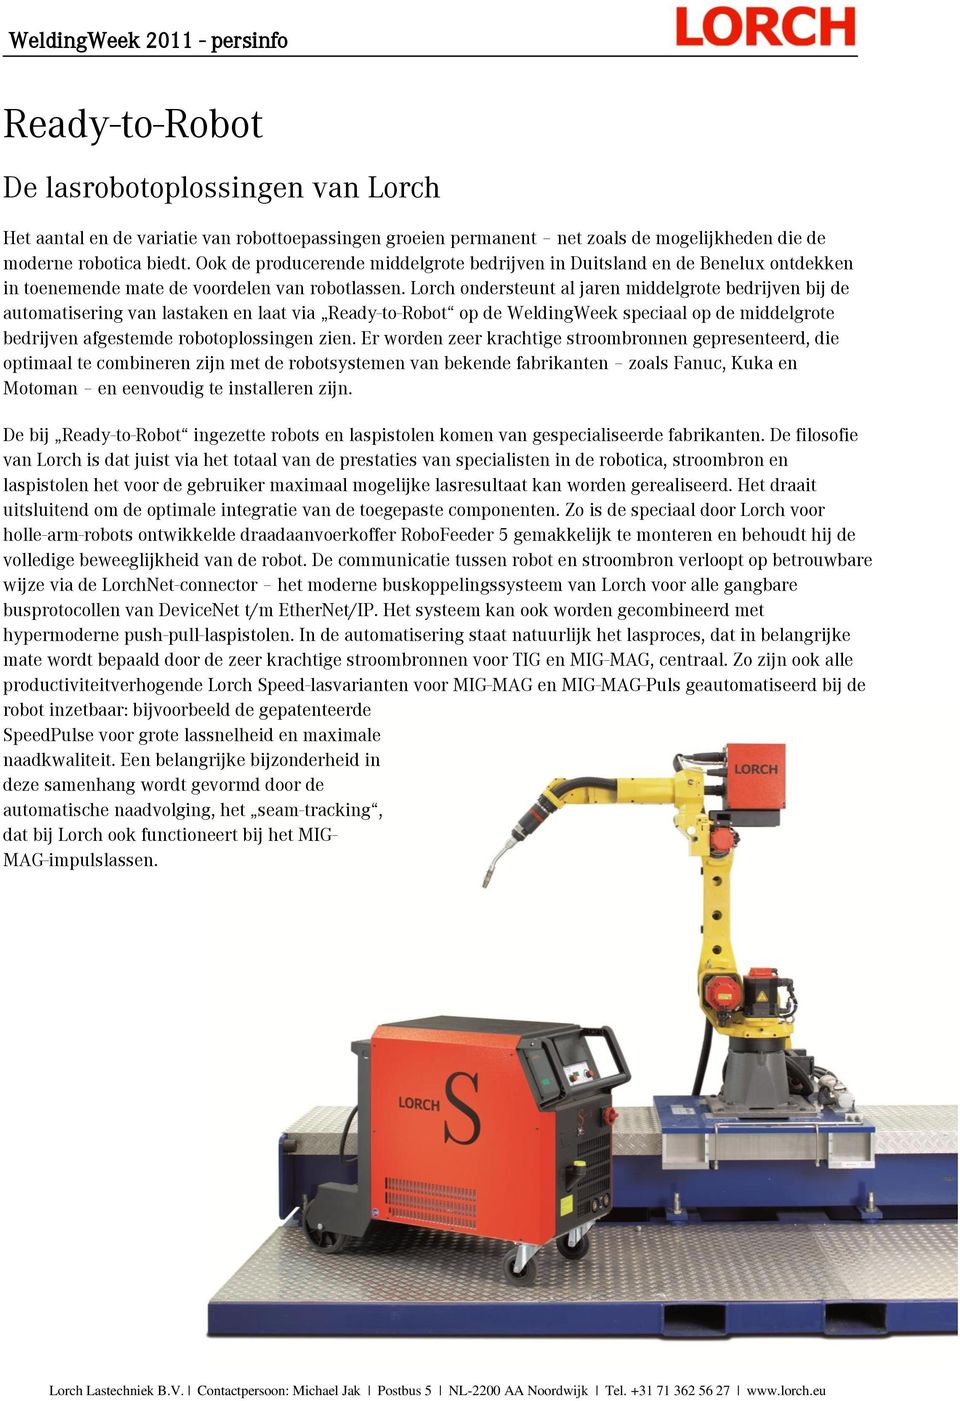 Lorch ondersteunt al jaren middelgrote bedrijven bij de automatisering van lastaken en laat via Ready-to-Robot op de WeldingWeek speciaal op de middelgrote bedrijven afgestemde robotoplossingen zien.